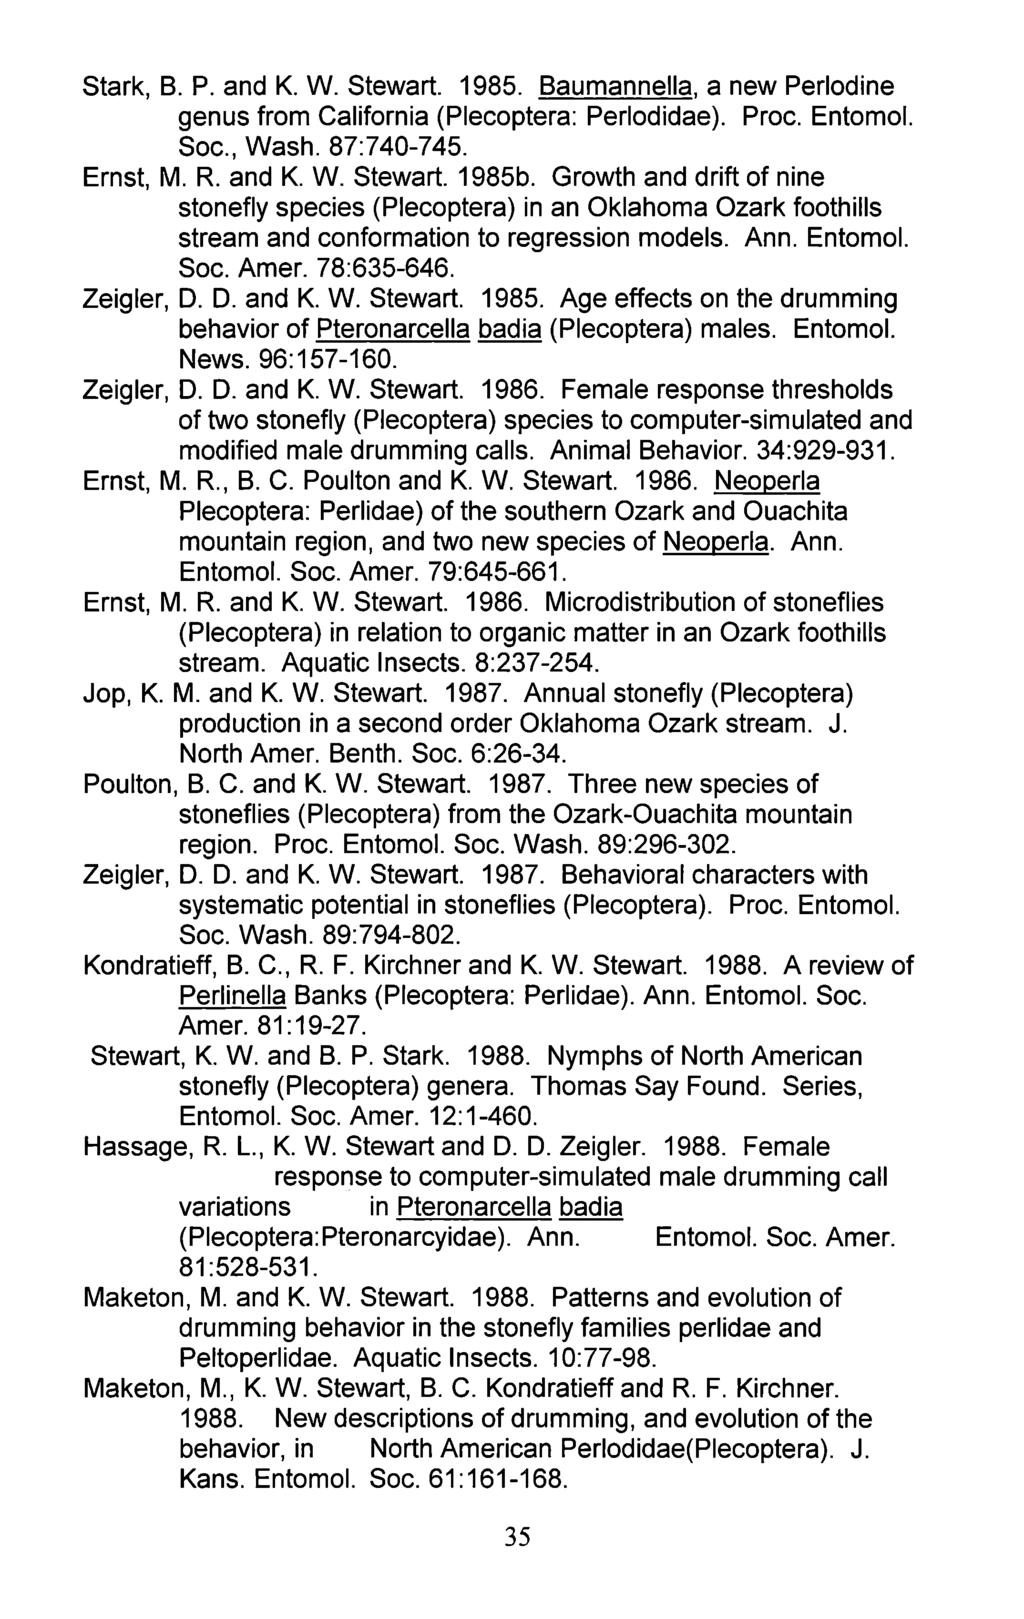 Stark, B. P. and K. W. Stewart. 1985. Baumannella, a new Perlodine genus from California (Plecoptera: Perlodidae). Proc. Entomol. Soc., Wash. 87:740-745. Ernst, M. R. and K. W. Stewart. 1985b.